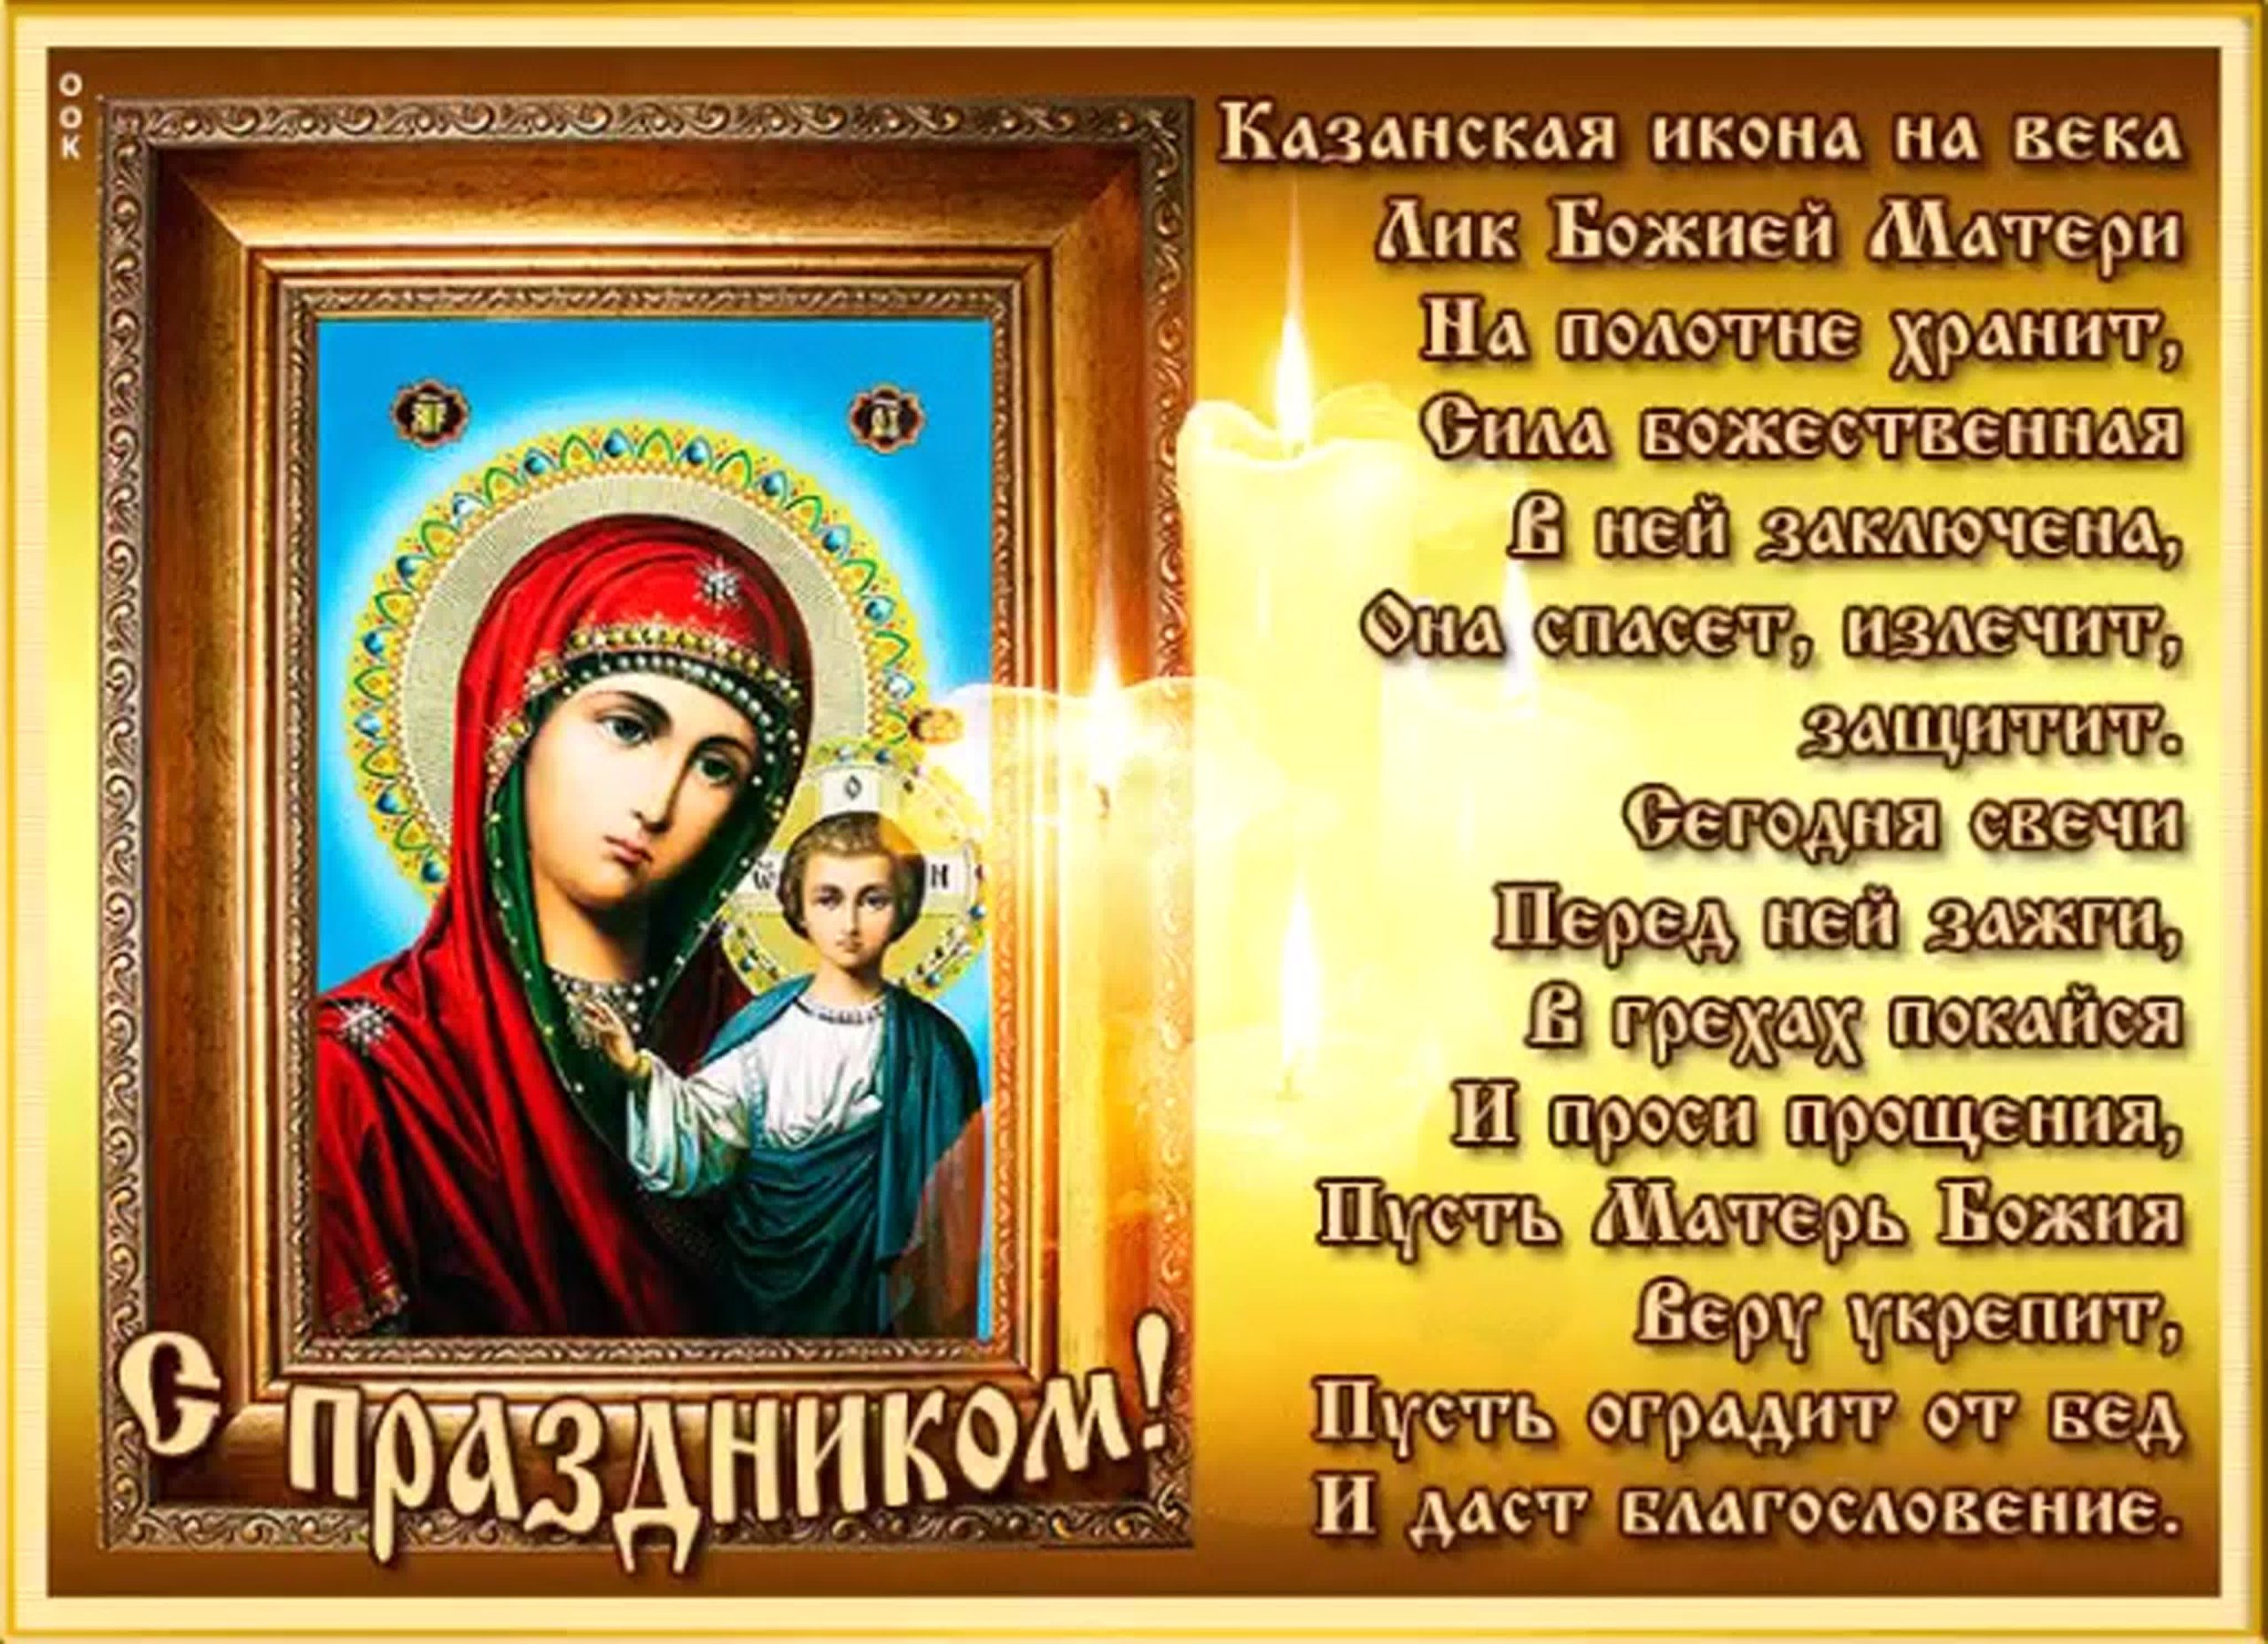 Картинки, фото и обои с изображением Казанской Божьей матери